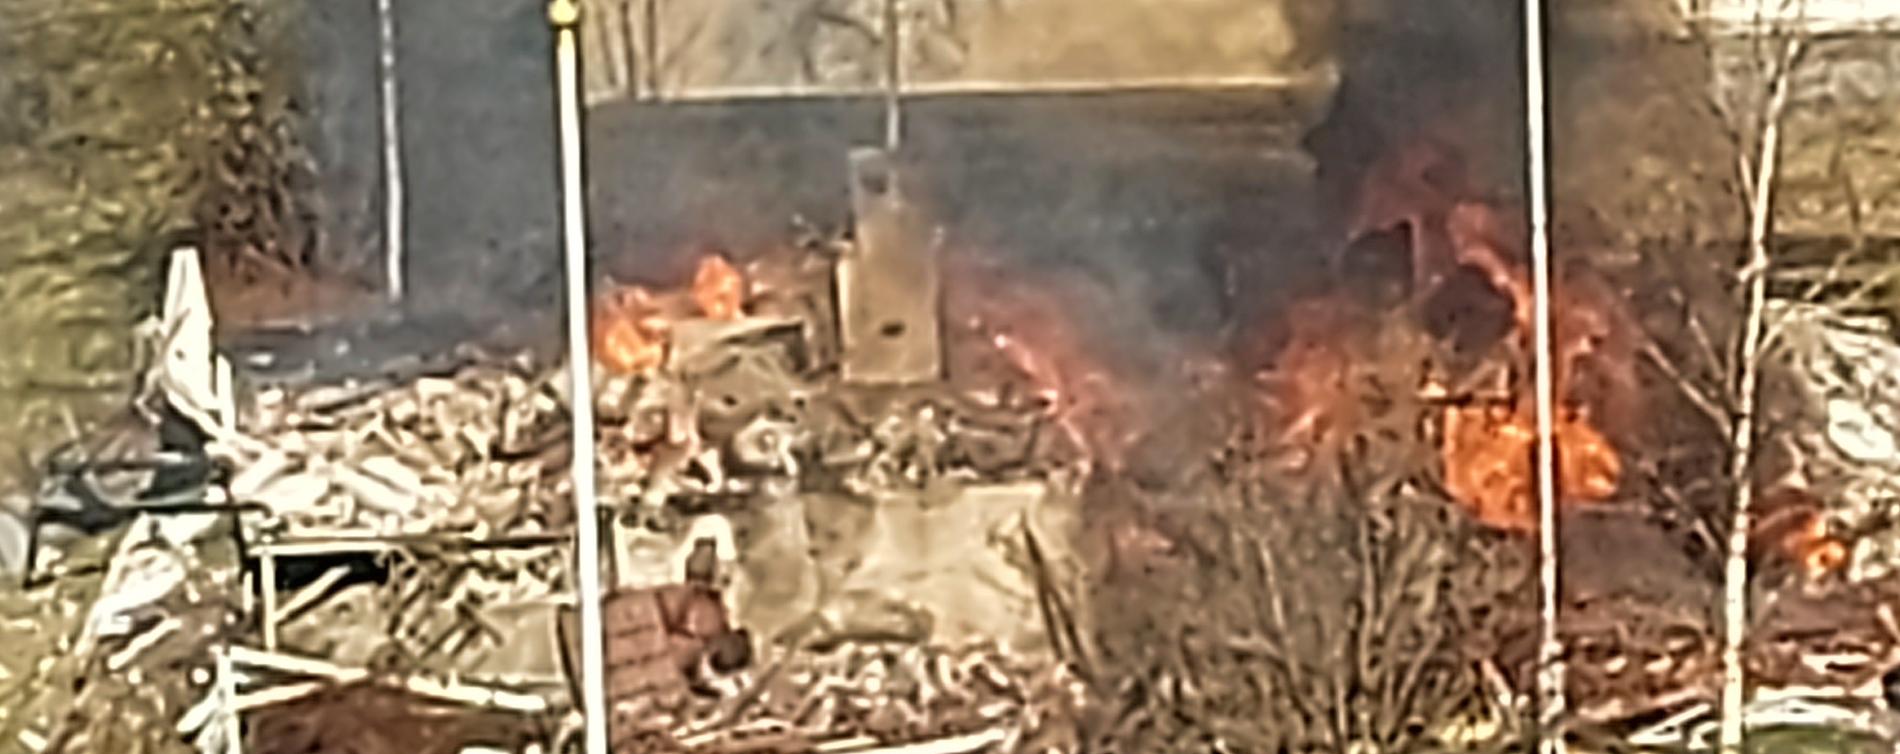 Naboer forteller at huset begynte å brenne etter eksplosjonen.